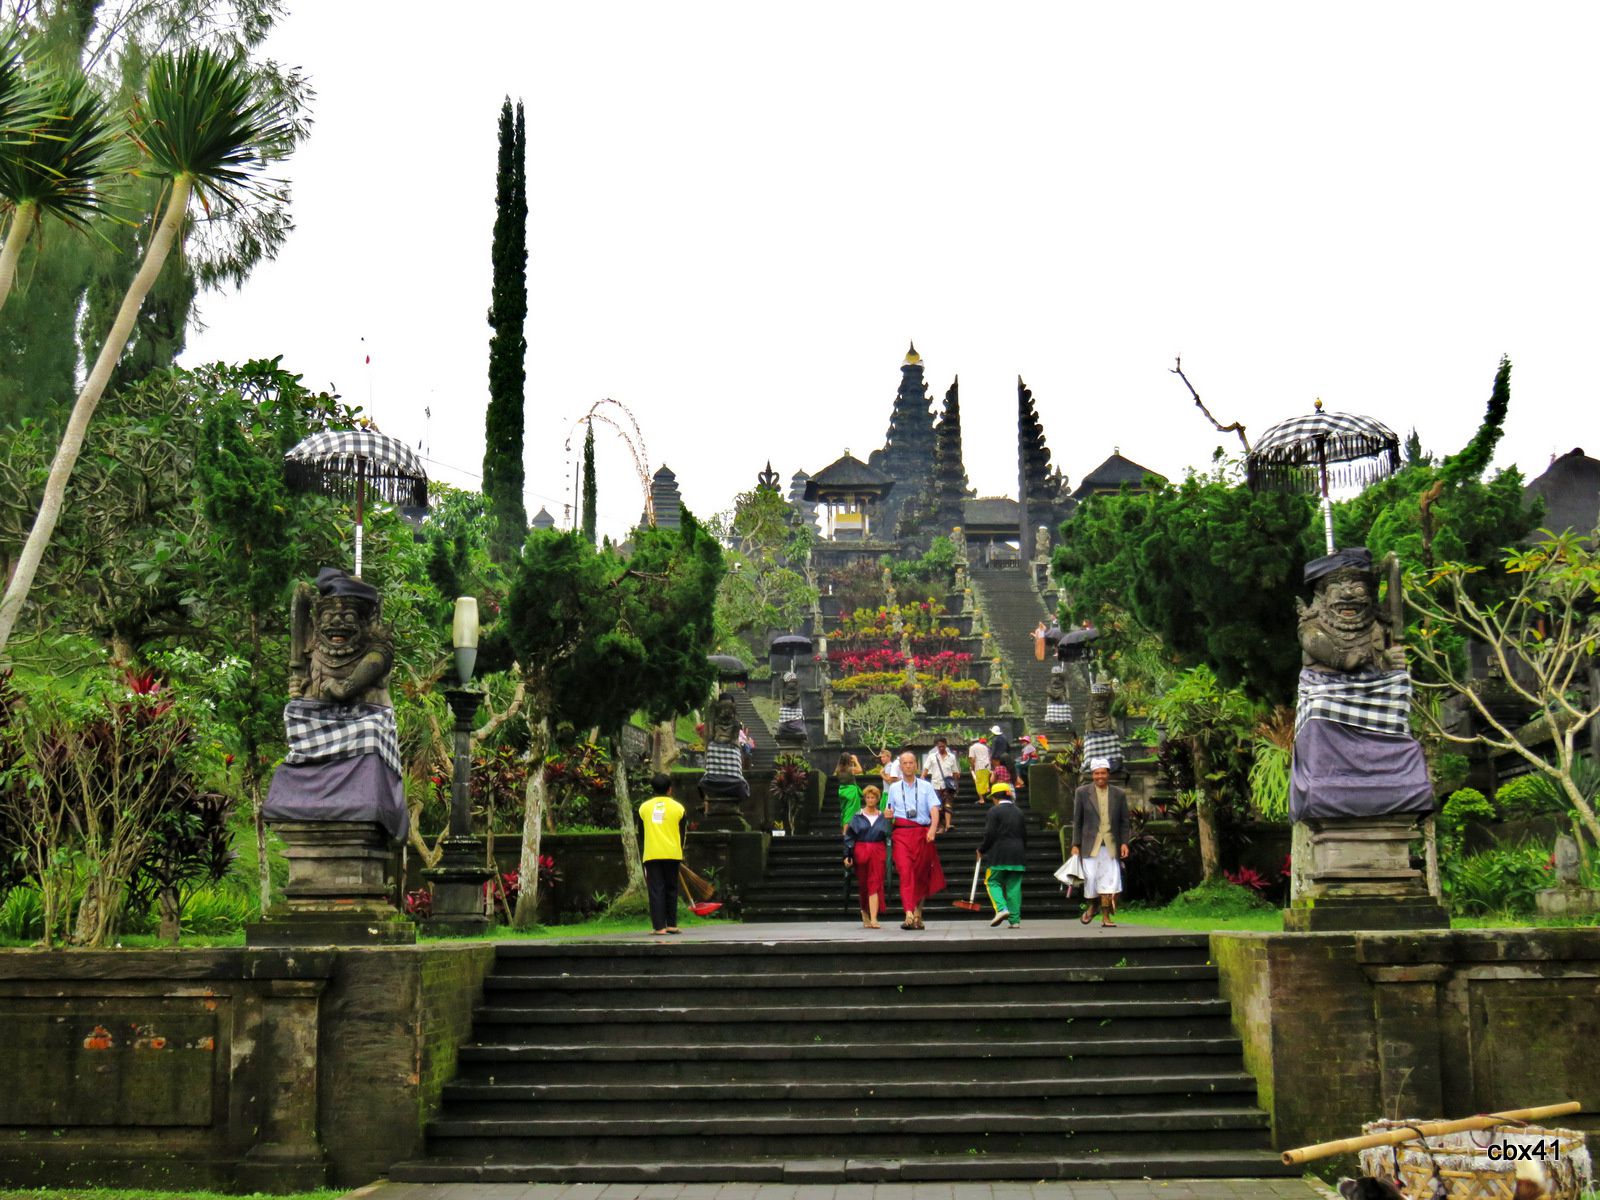  Temple (pura) Basukian Puseh Jagat, génies du grand escalier, Bali (Indonésie)